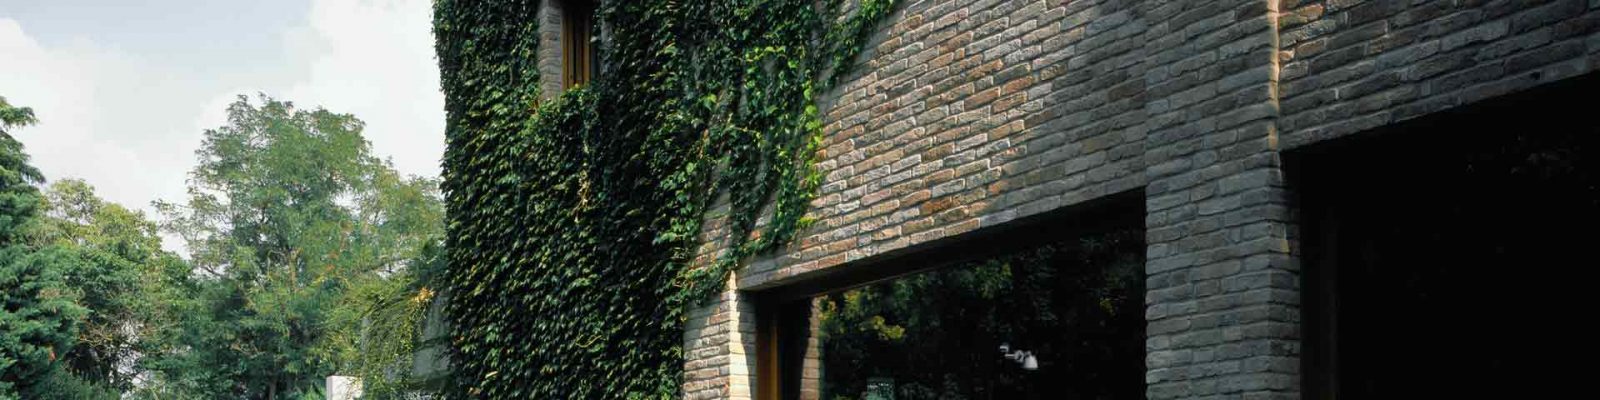 Villa Parma, élévation de brique et fenêtres en verre fixes